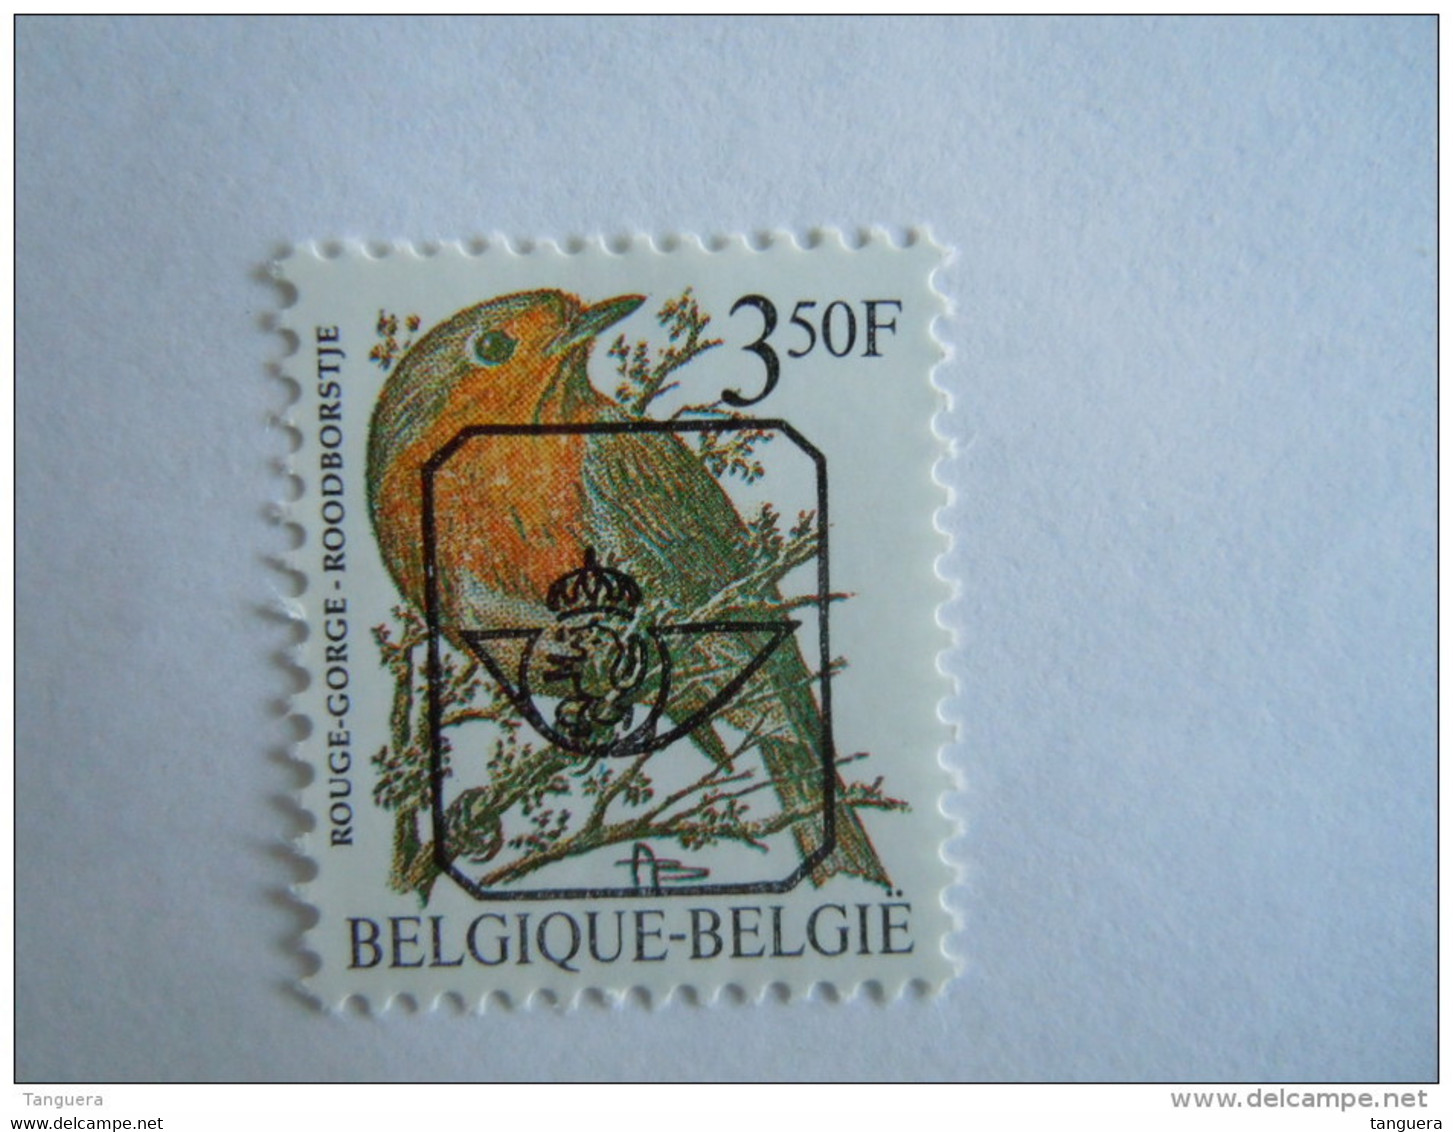 België Belgique Belgium 1986 Vogels Oiseaux Buzin Roodborstje Rouge-gorge Preo V822 GG MNH ** - Tipo 1986-96 (Uccelli)